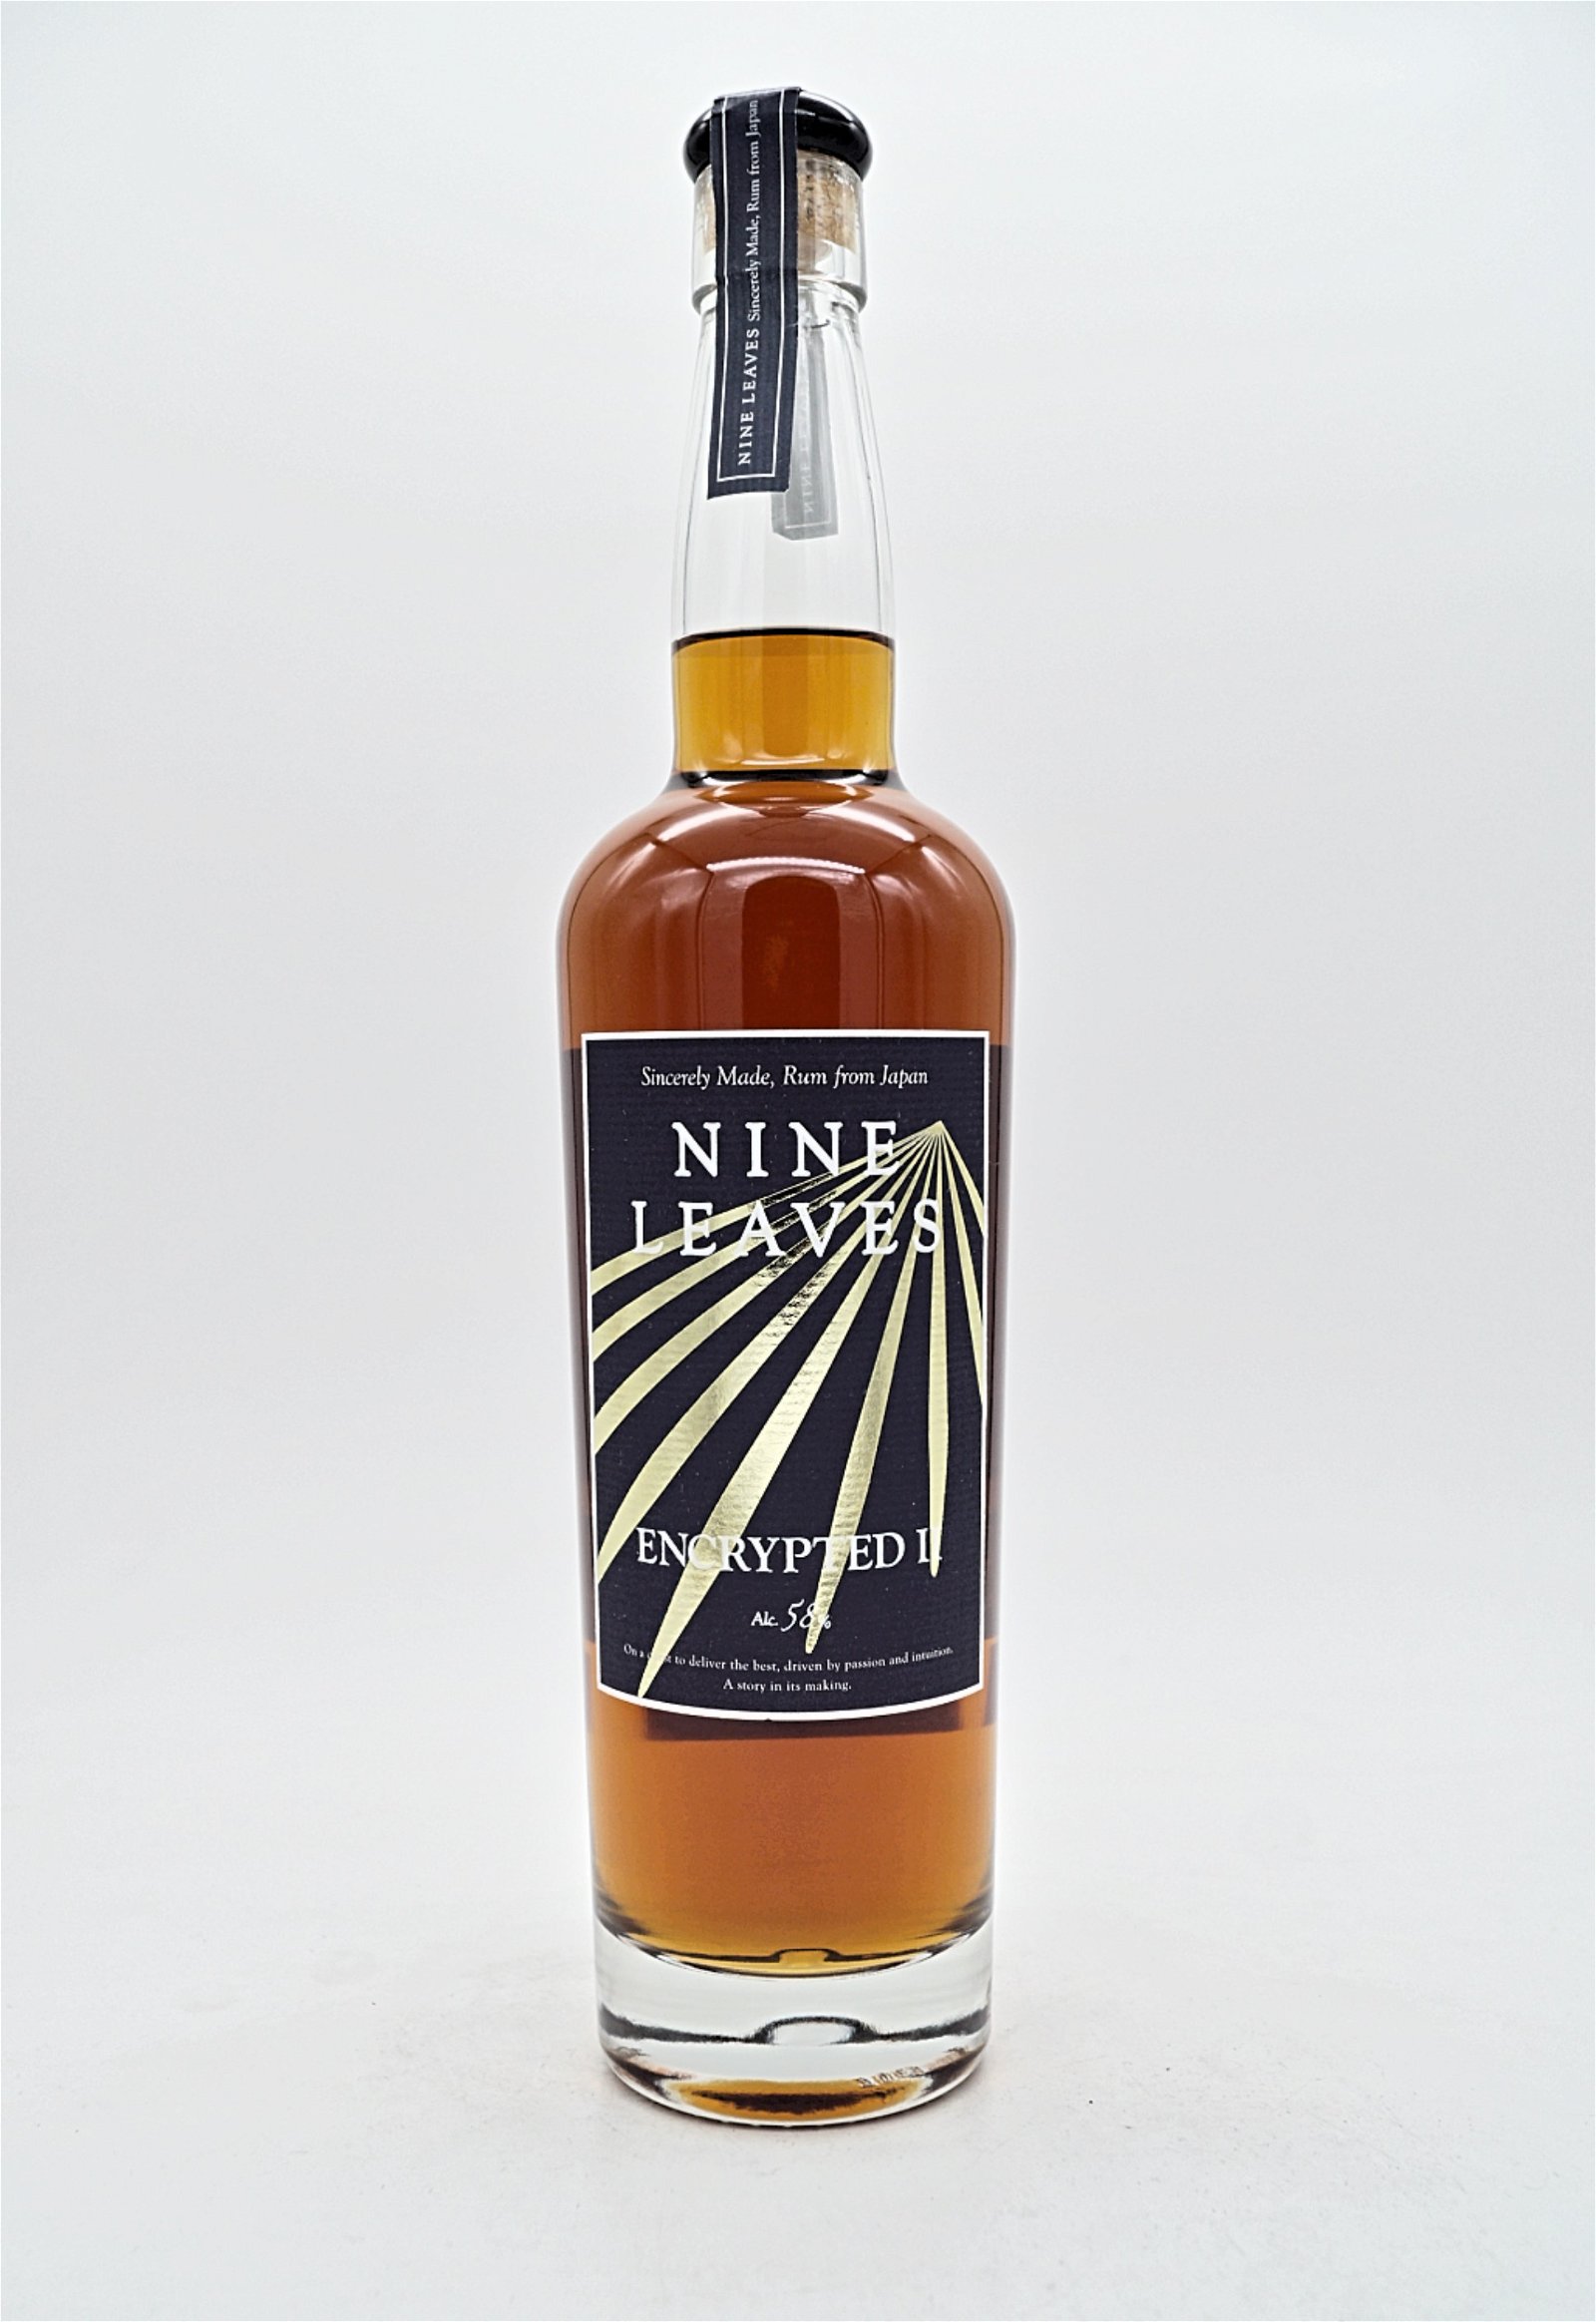 Nine Leaves Encrypted II Japan Rum